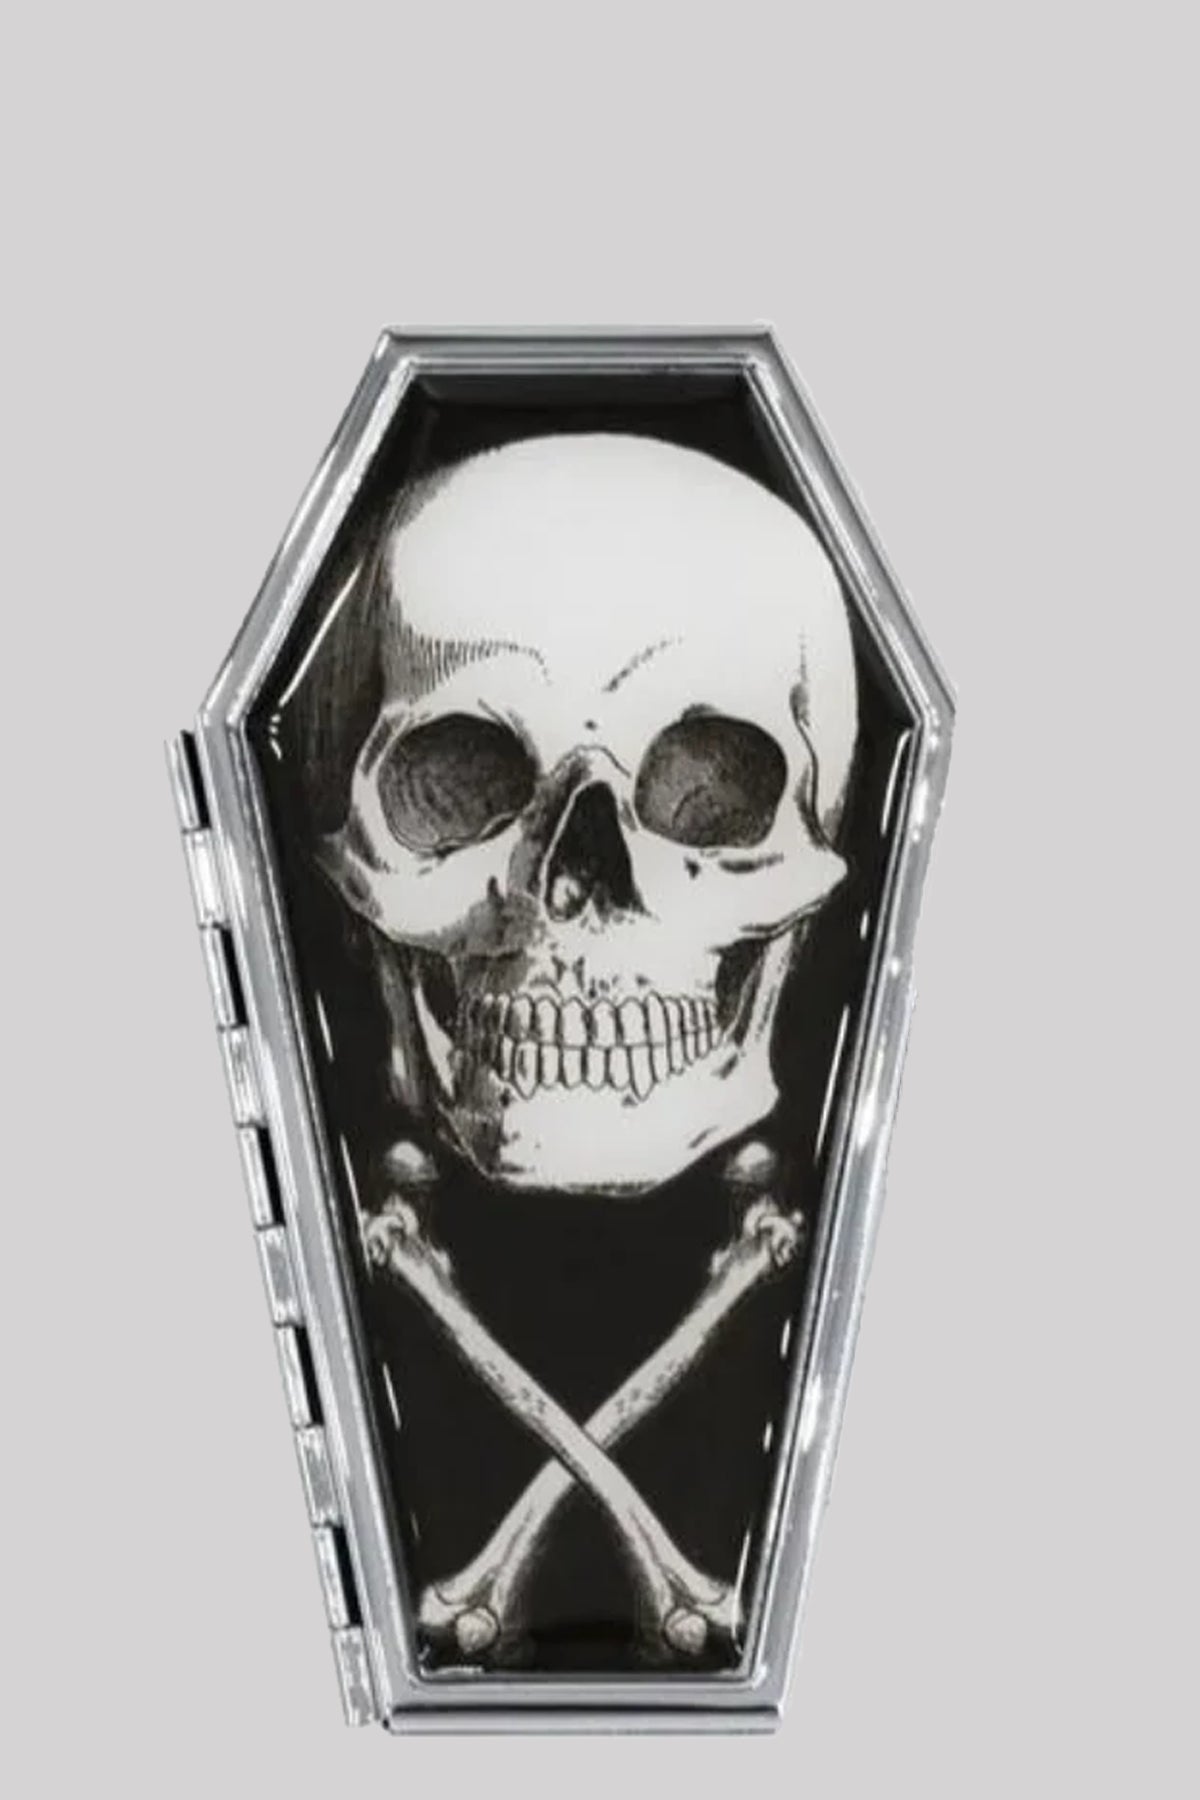 Kreepsville 666 Anatomical Skull Coffin Compact Mirror